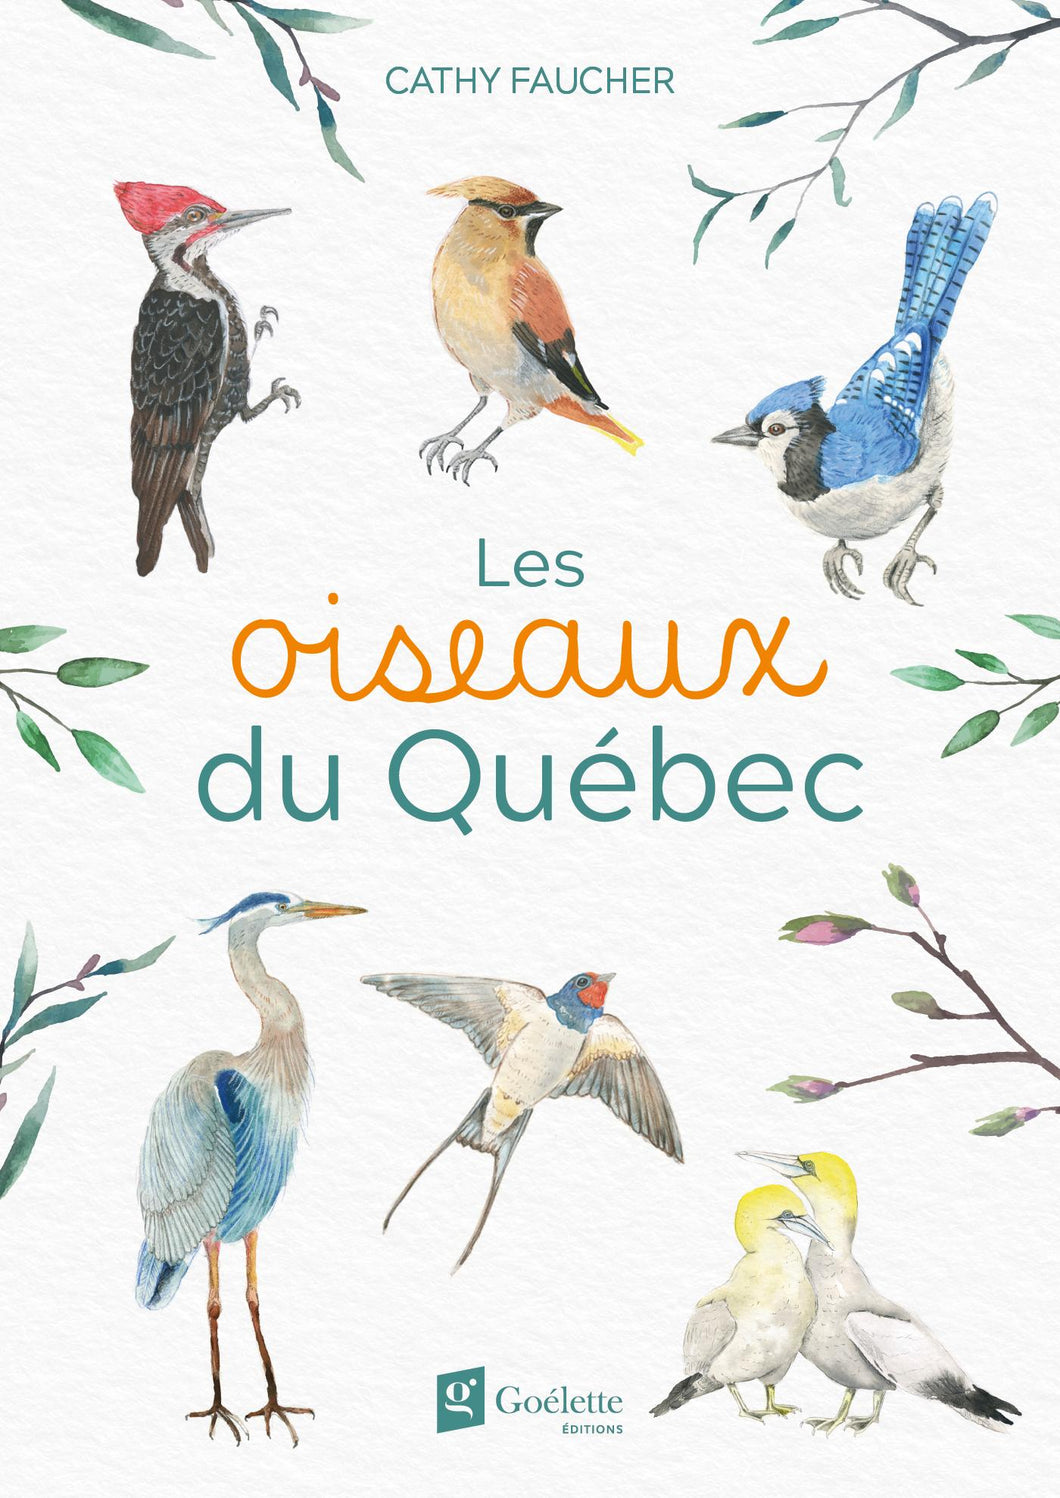 Livre 'Les oiseaux du Québec' écrit et illustré à l'aquarelle par Cathy Faucher aux Éditions Goélette